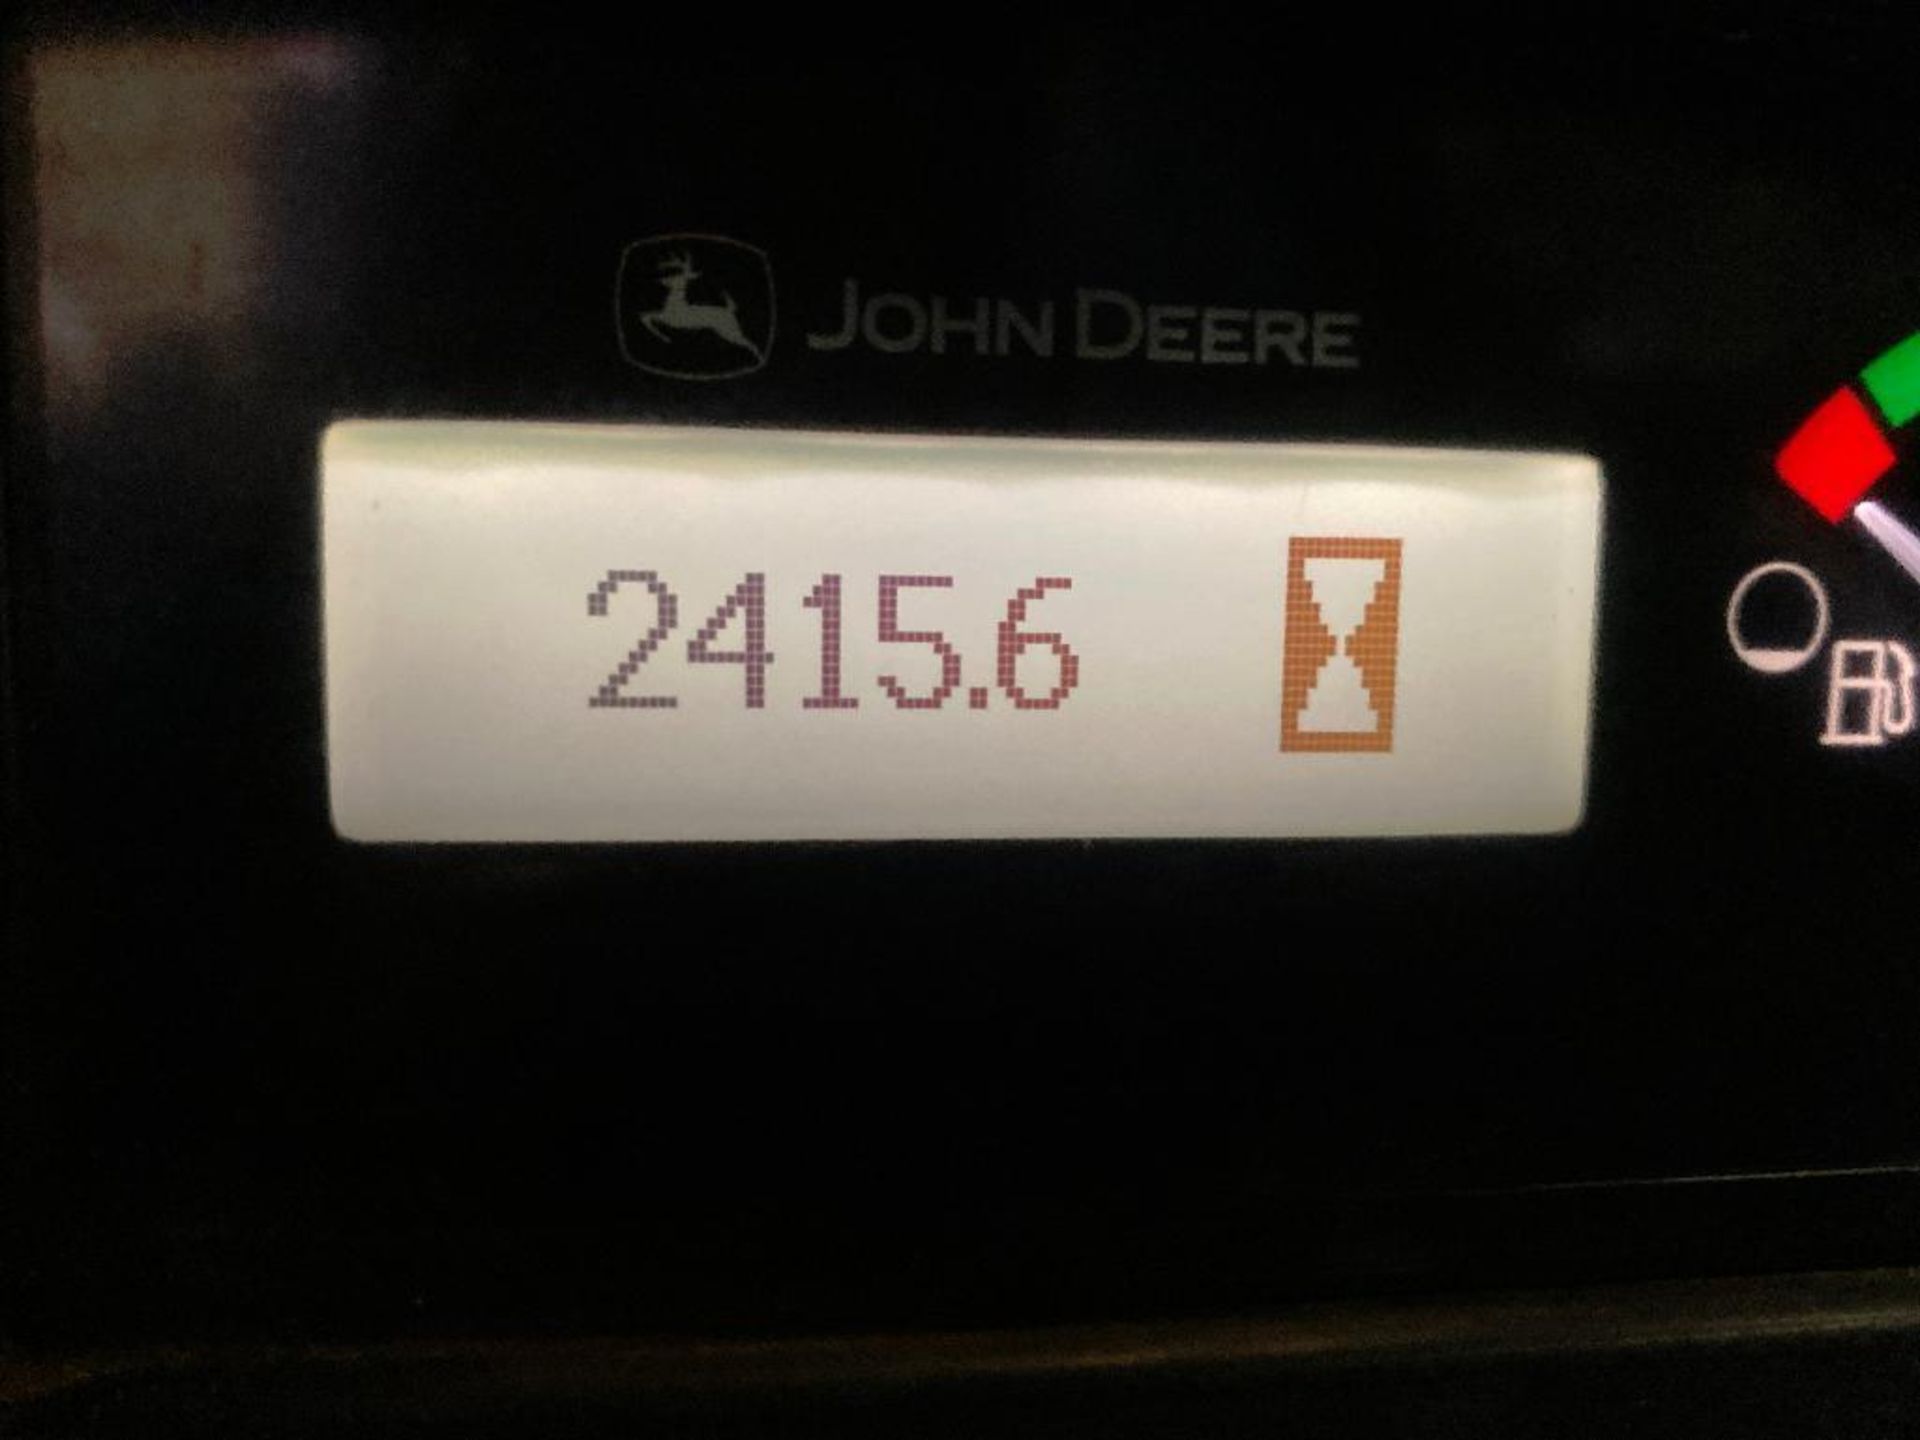 2012 John Deere 328D Skidsteer, Aux Hydraulics, 2,415hrs Showing, c/w Forks, VIN: 1T0328DKCB0197640 - Image 10 of 11